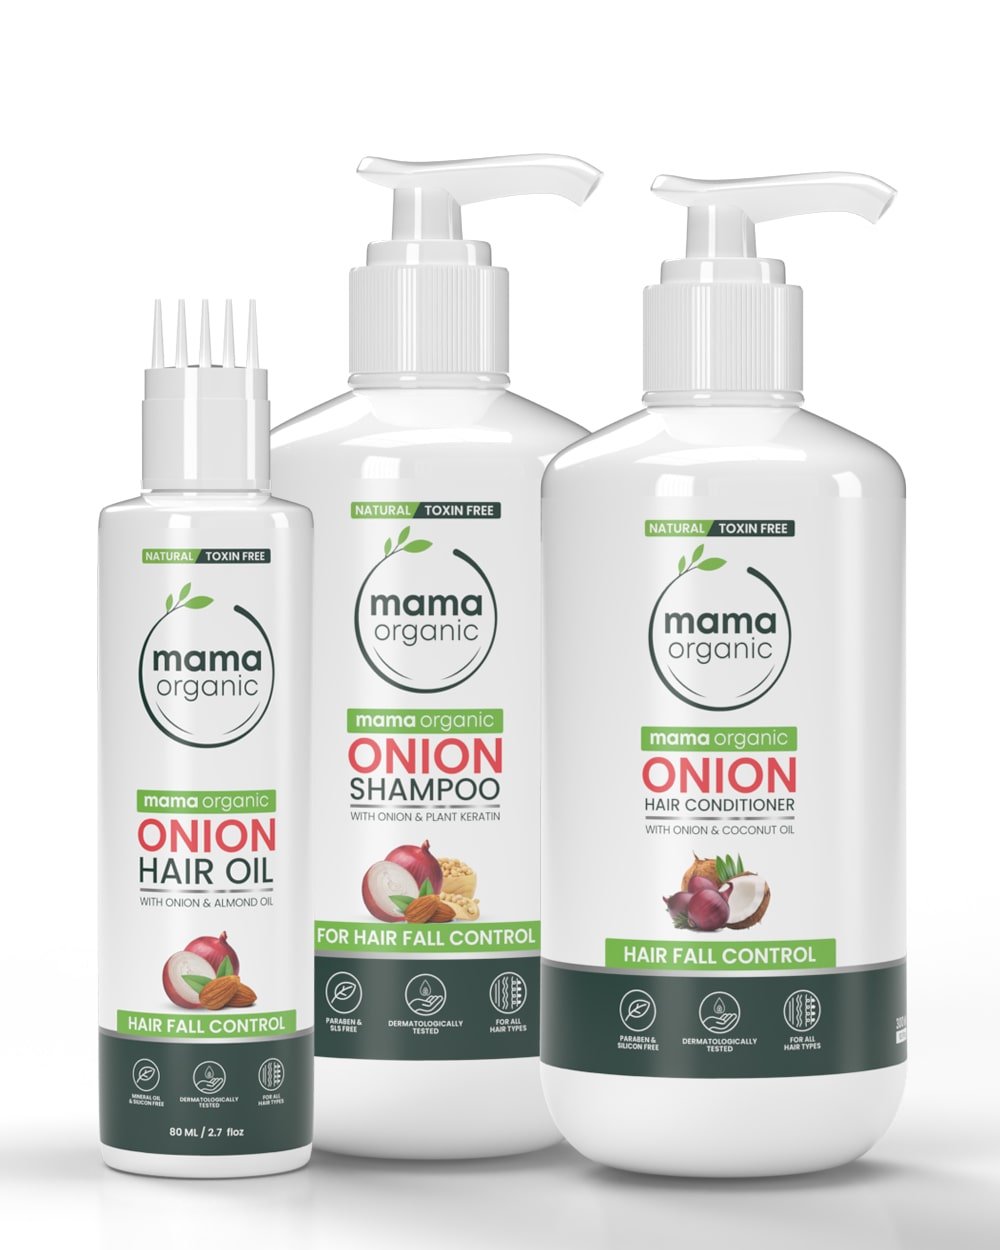 Hair Fall Control Kit | Onion Hair Oil 80ml + Onion Hair Shampoo 300ml + Onion Hair Conditioner 300ml - Natural & Toxin-Free - MamaOrganic